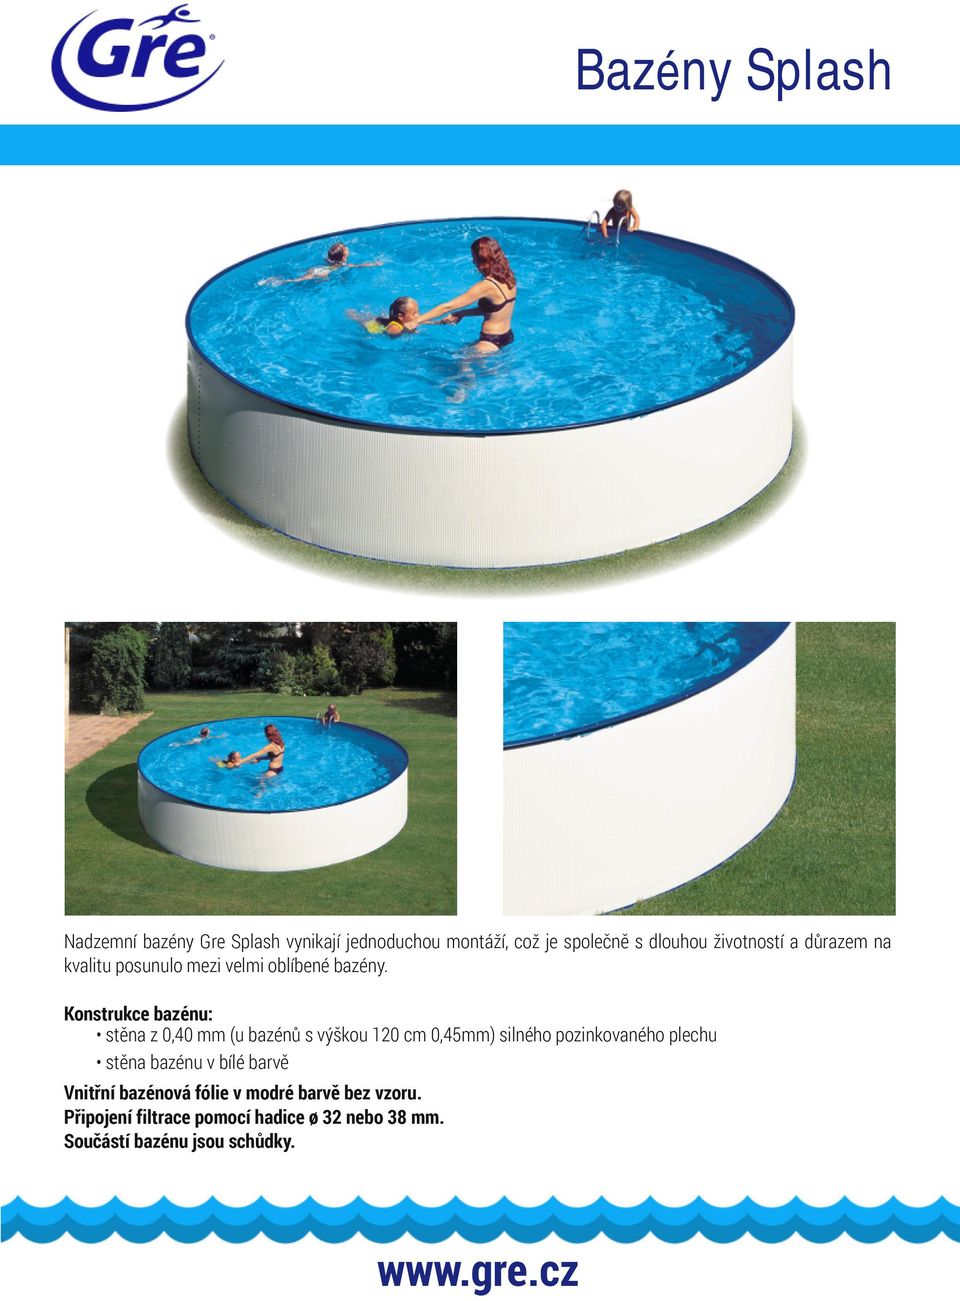 Konstrukce bazénu: stěna z 0,40 mm (u bazénů s výškou 120 cm 0,45mm) silného pozinkovaného plechu stěna